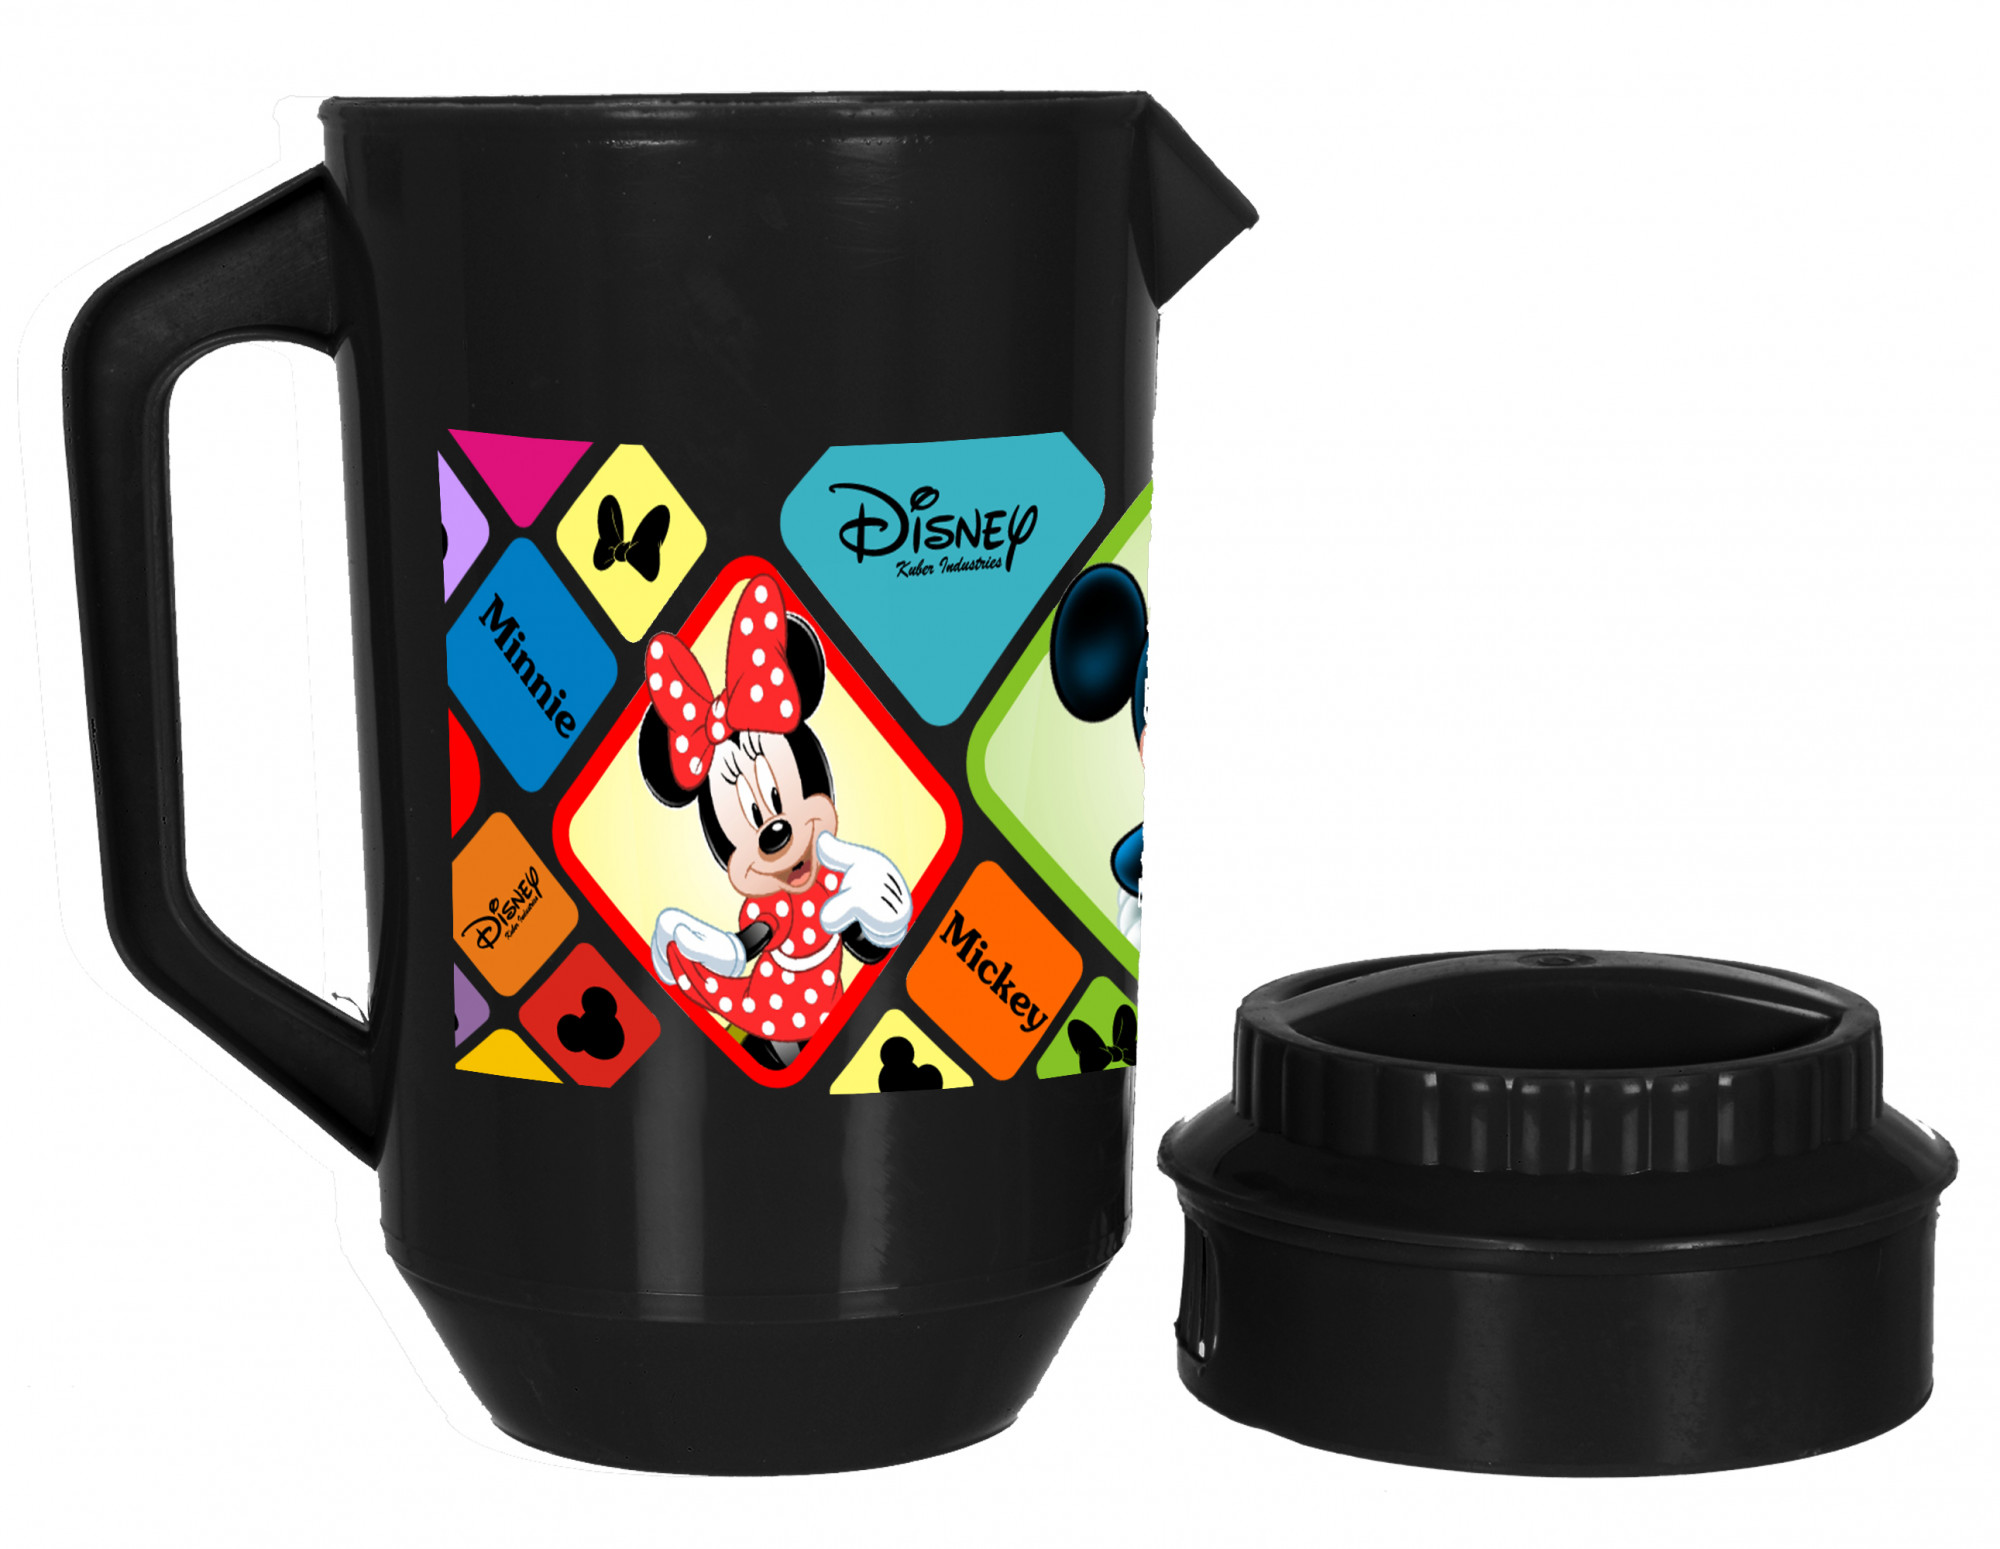 Kuber Industries Disney Mickey Minnie Print Unbreakable Multipurpose Plastic Water & Juice Jug With Lid,2 Ltr (Set Of 2, Black & White)